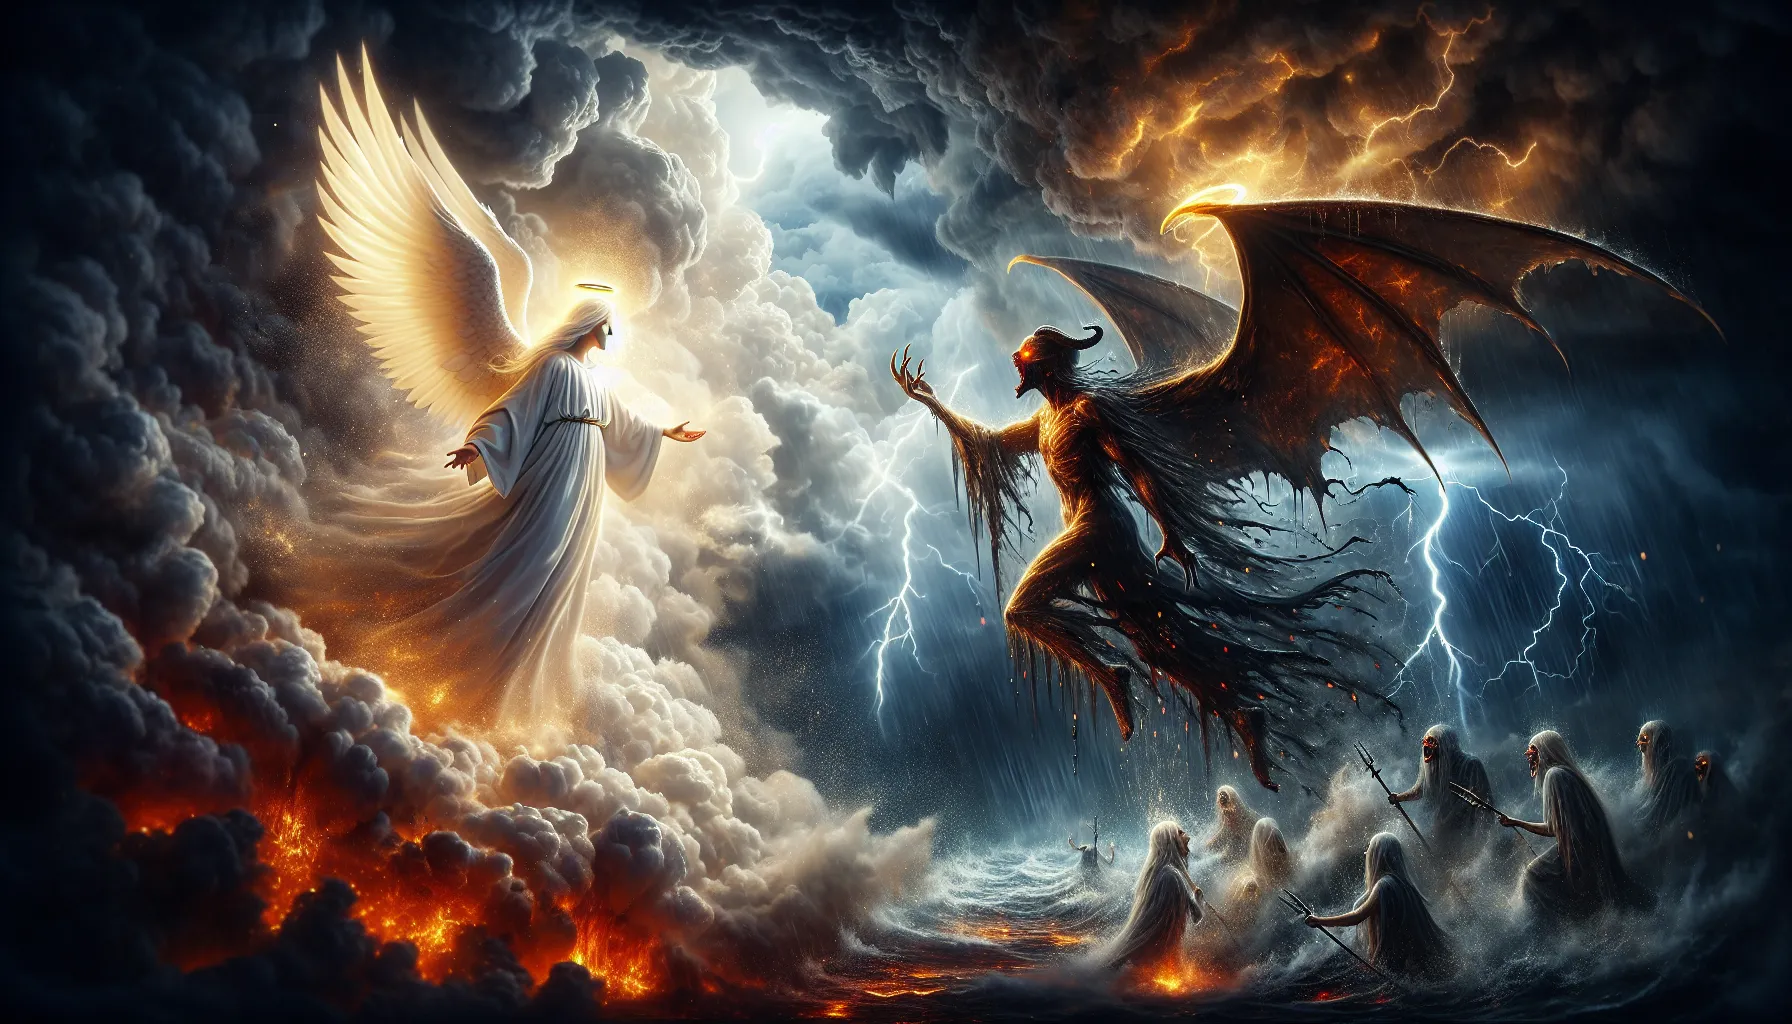 Imagen de tormenta apocalíptica con figuras angelicales y demoníacas enfrentadas